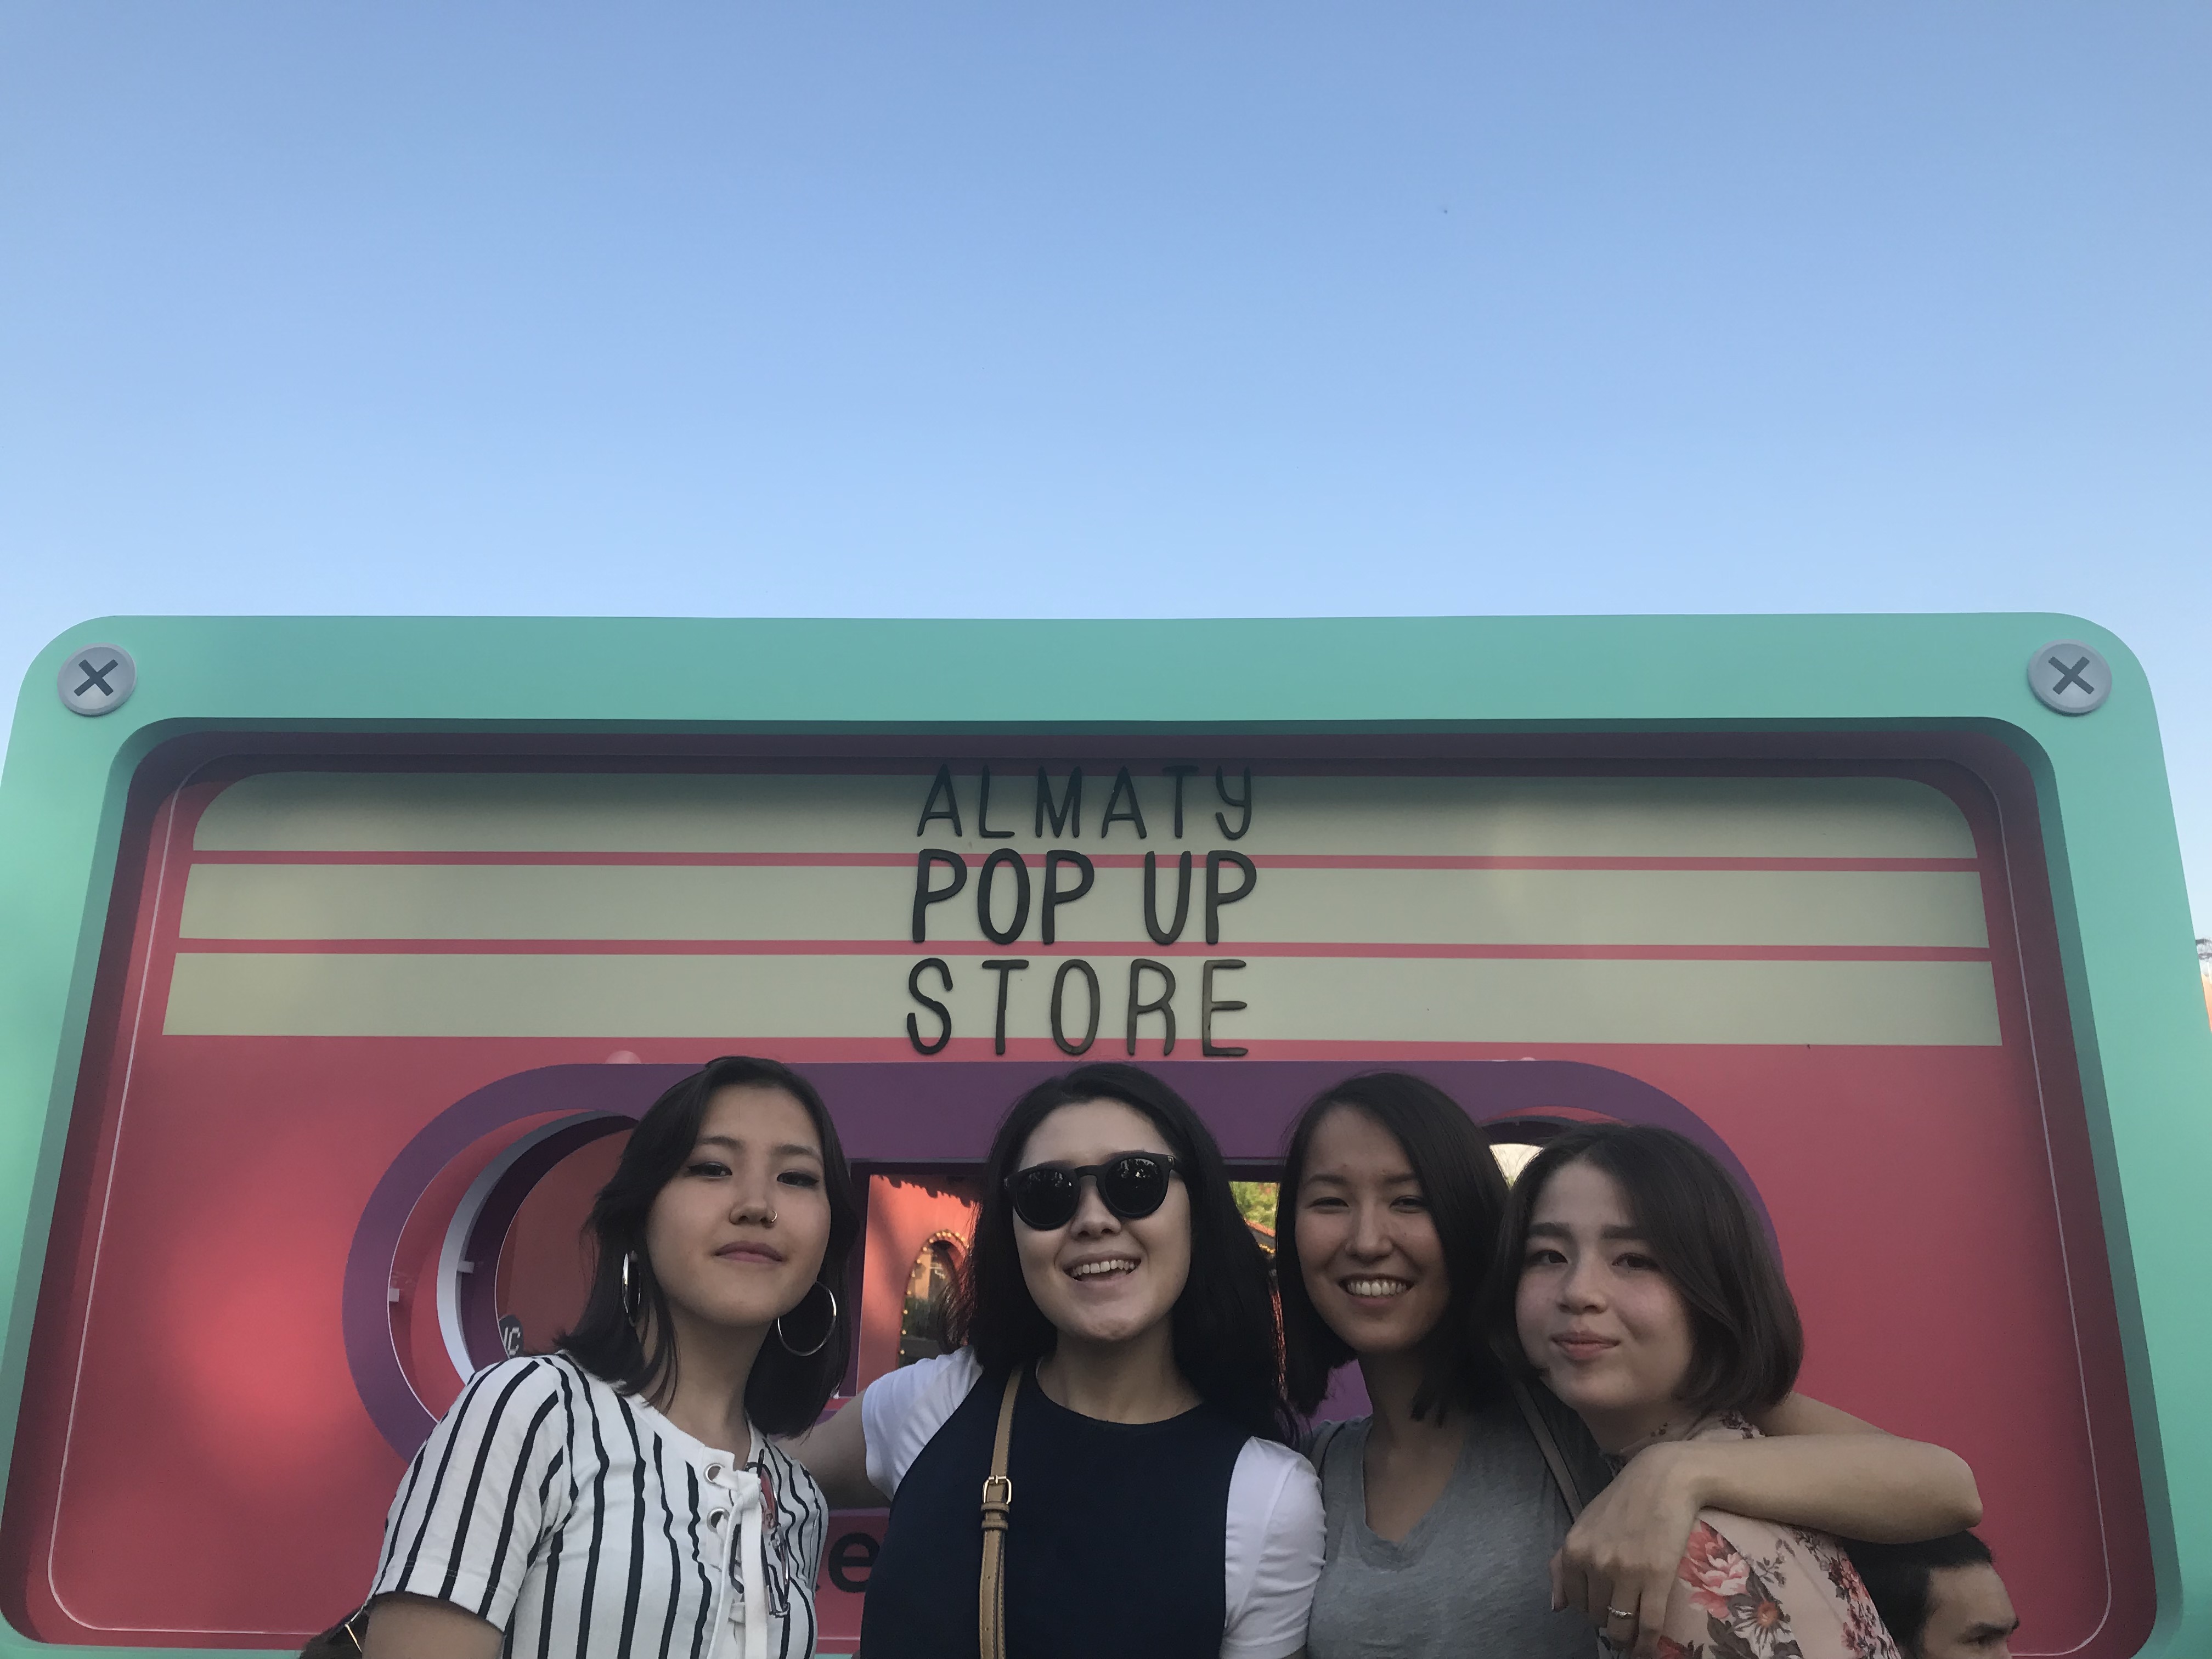 Almaty Pop Up Store: Про различие поколений, вдумчивое потребление и сбор мусора